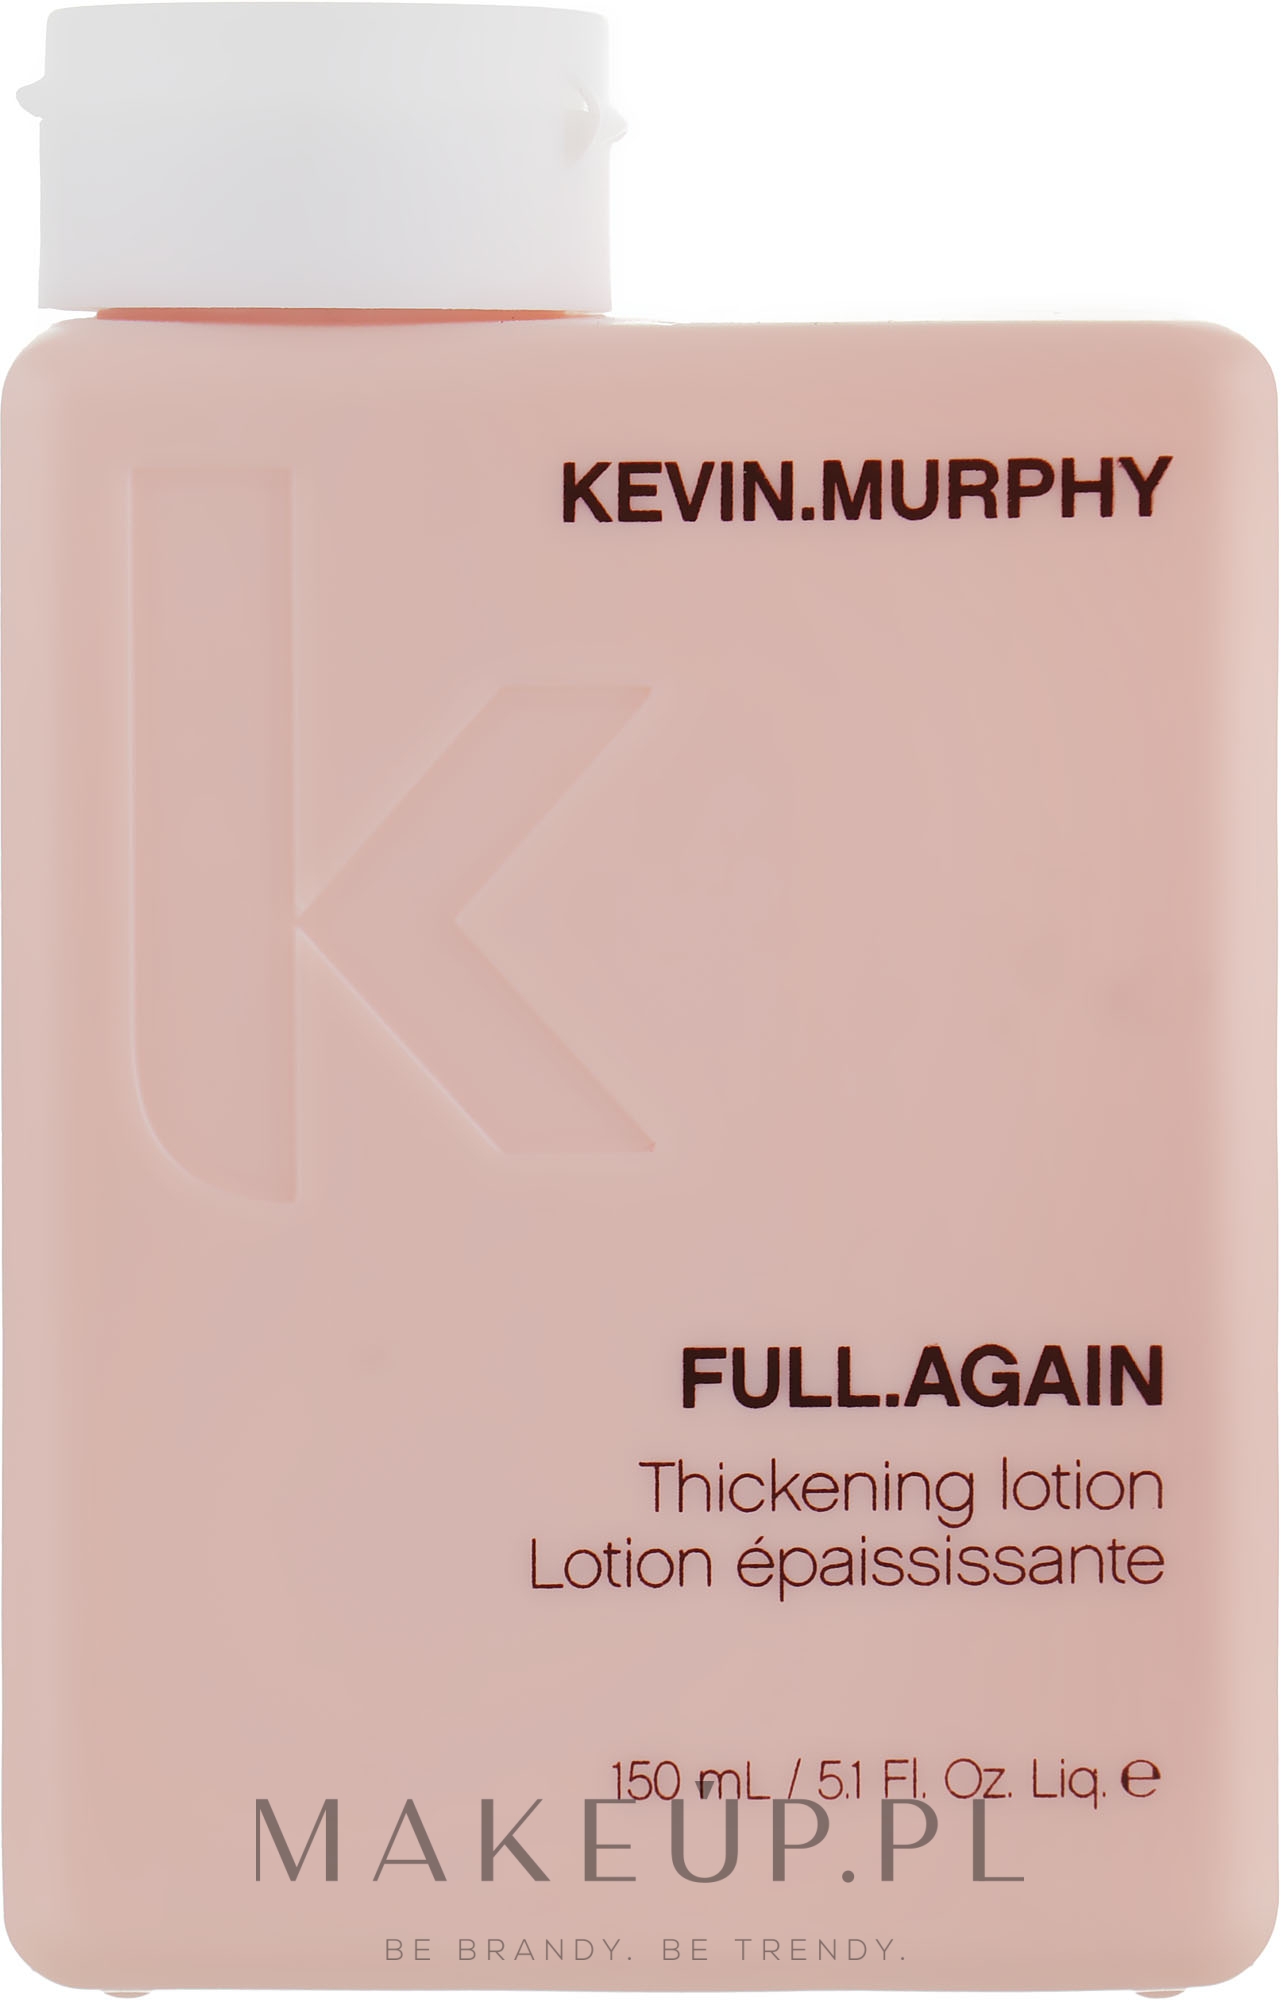 Balsam dodający objętości i zagęszczający włosy - Kevin.Murphy Full.Again Thickening Lotion — Zdjęcie 150 ml